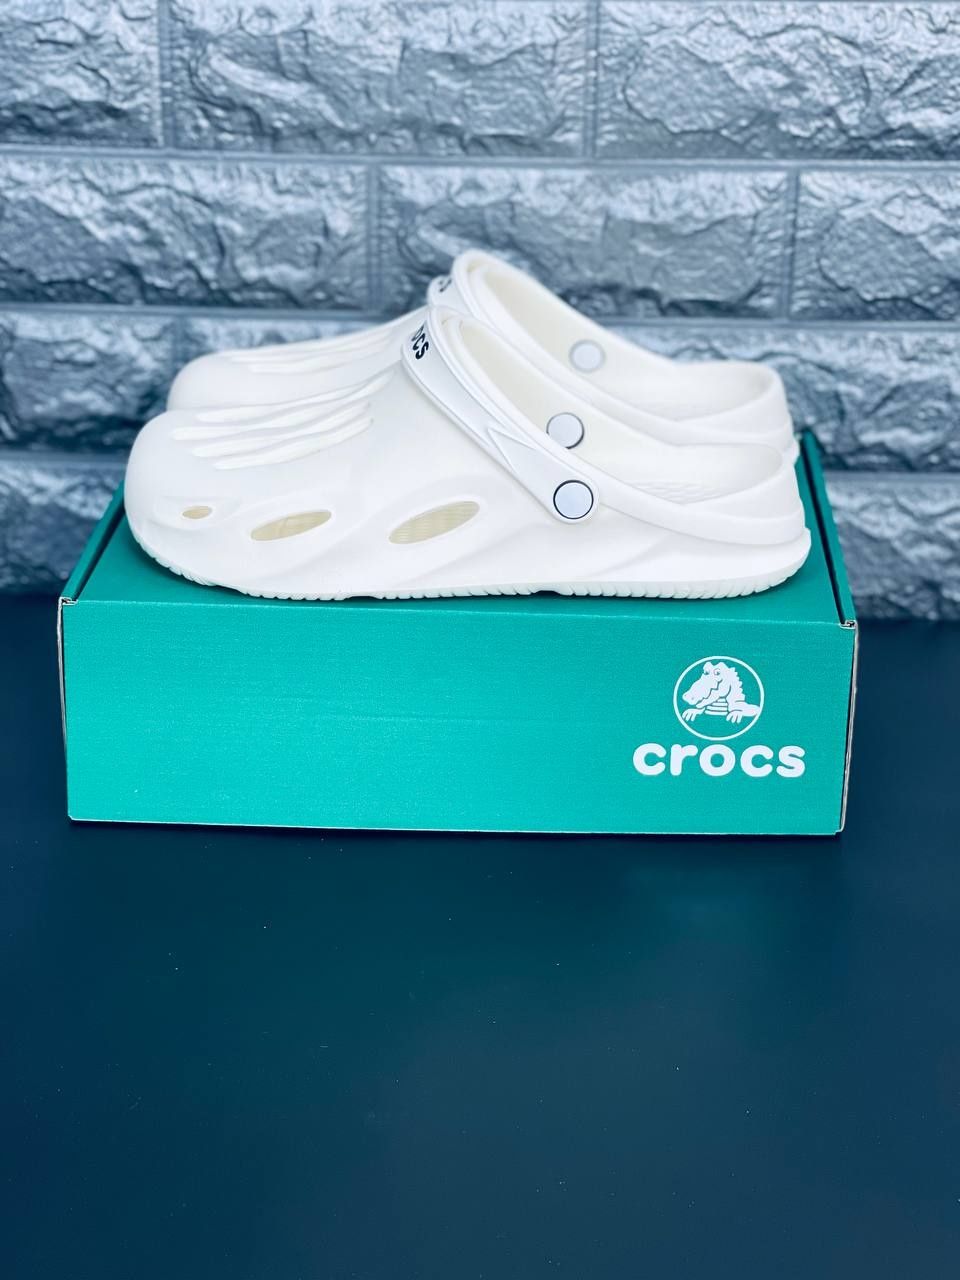 МУЖСКИЕ кроксы Crocs шлёпанцы белого цвета Крокс 39-45